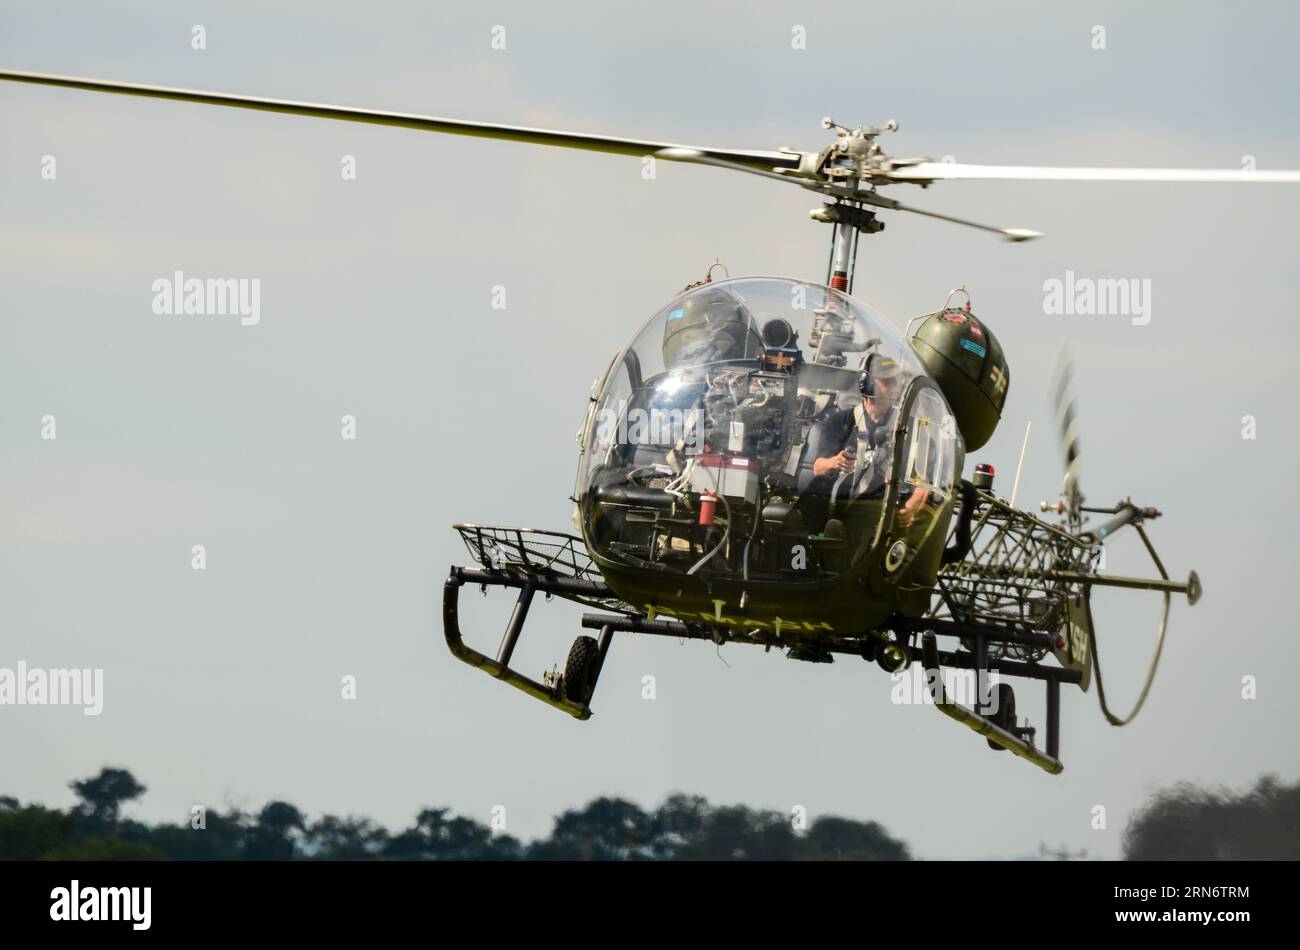 Bell 47G elicottero d'epoca G-MASH che rappresenta l'elicottero di evacuazione medica utilizzato nel programma televisivo MASH of the Korean War, volando all'airshow Foto Stock